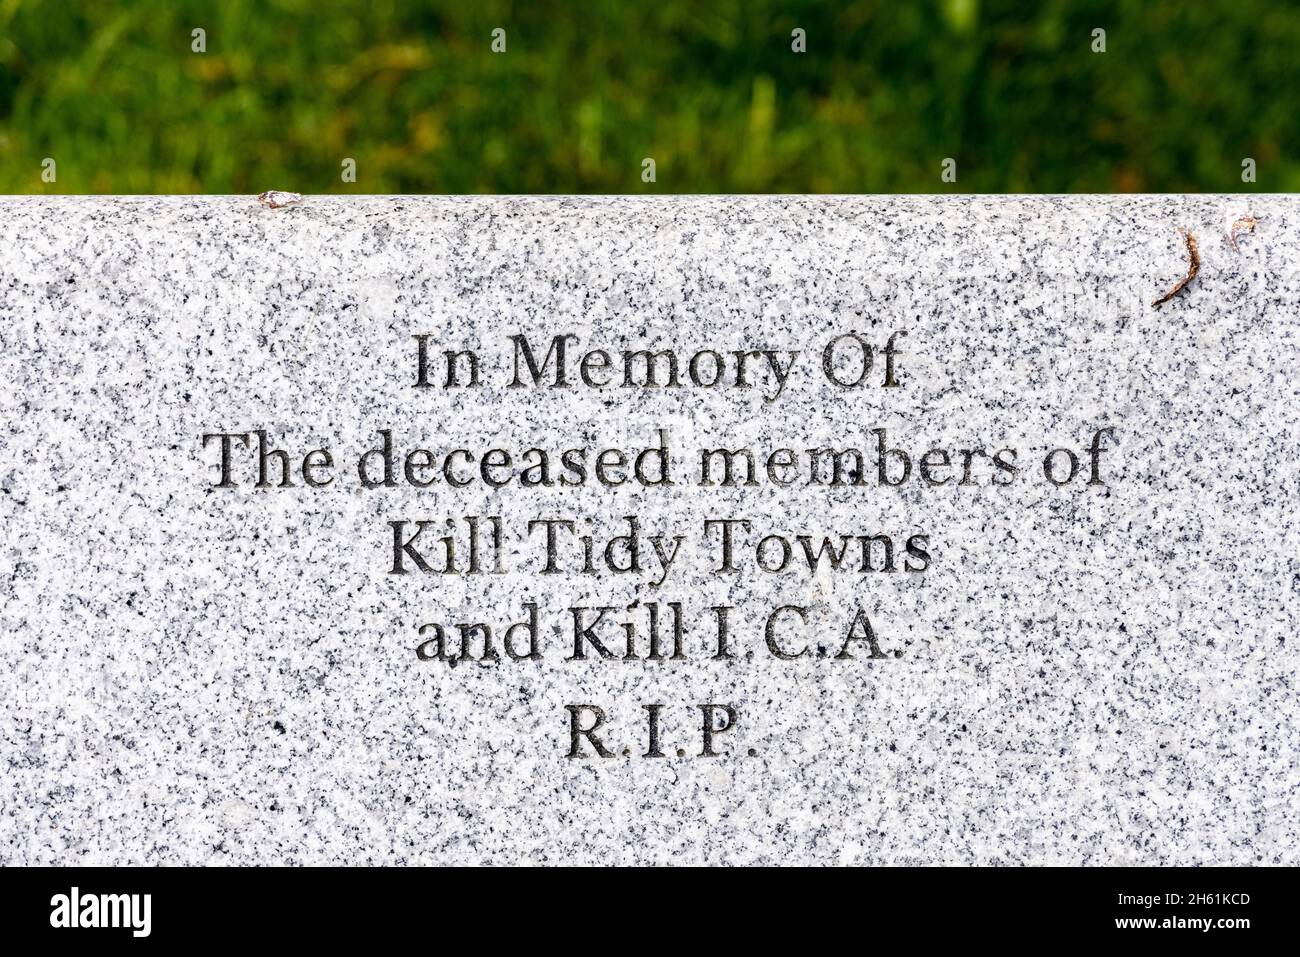 Grabado en un banco de piedra, en memoria de los difuntos miembros de Kill Tidy ciudades y Kill ICA RIP, en Kill, Condado de Kildare, Irlanda, Foto de stock